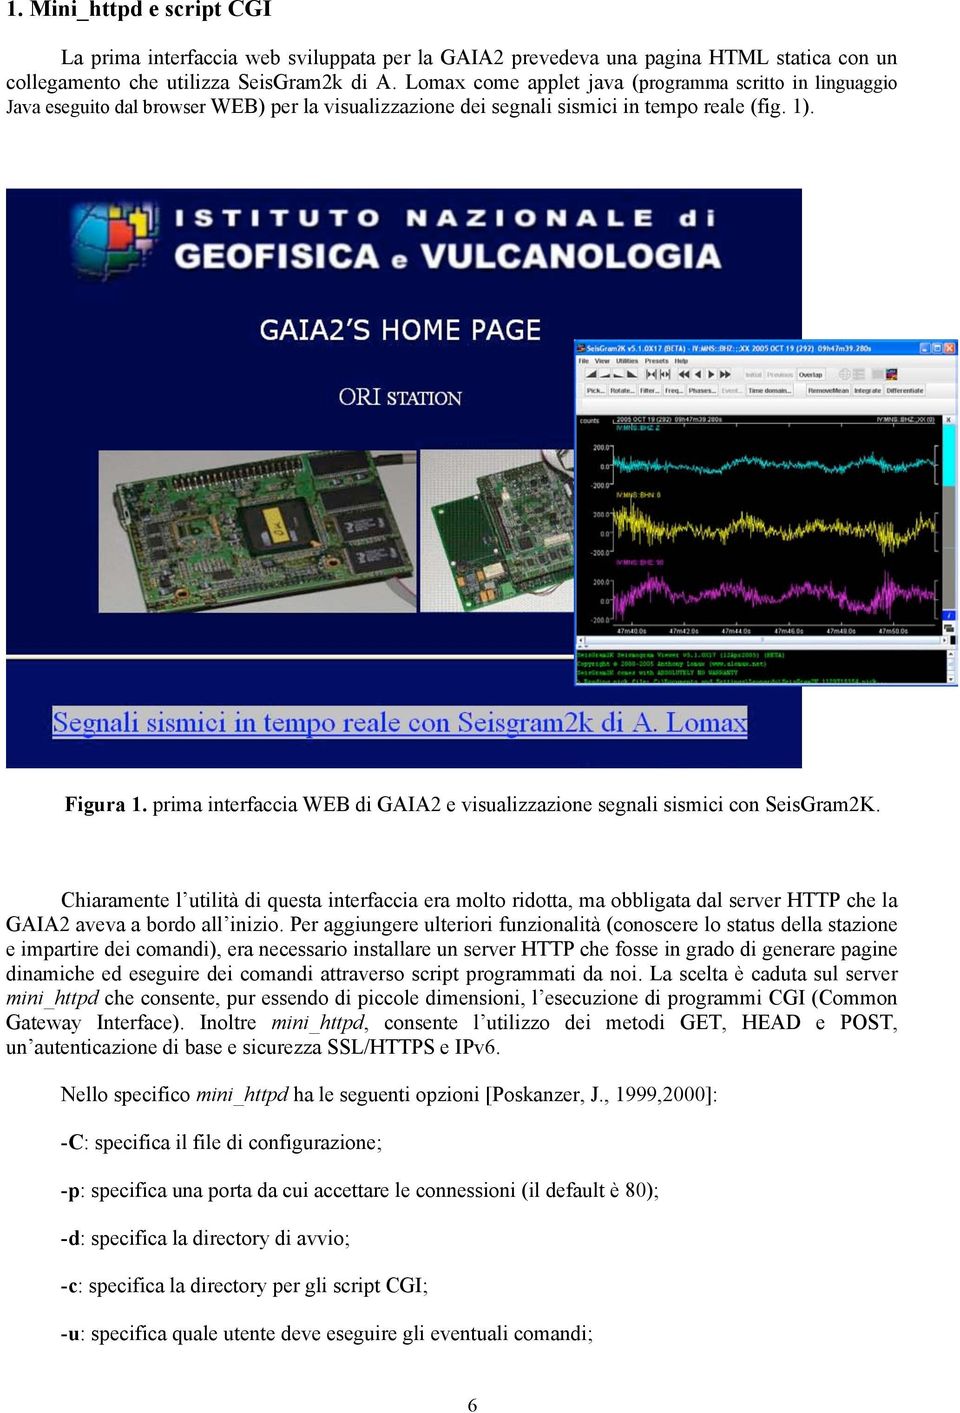 prima interfaccia WEB di GAIA2 e visualizzazione segnali sismici con SeisGram2K.